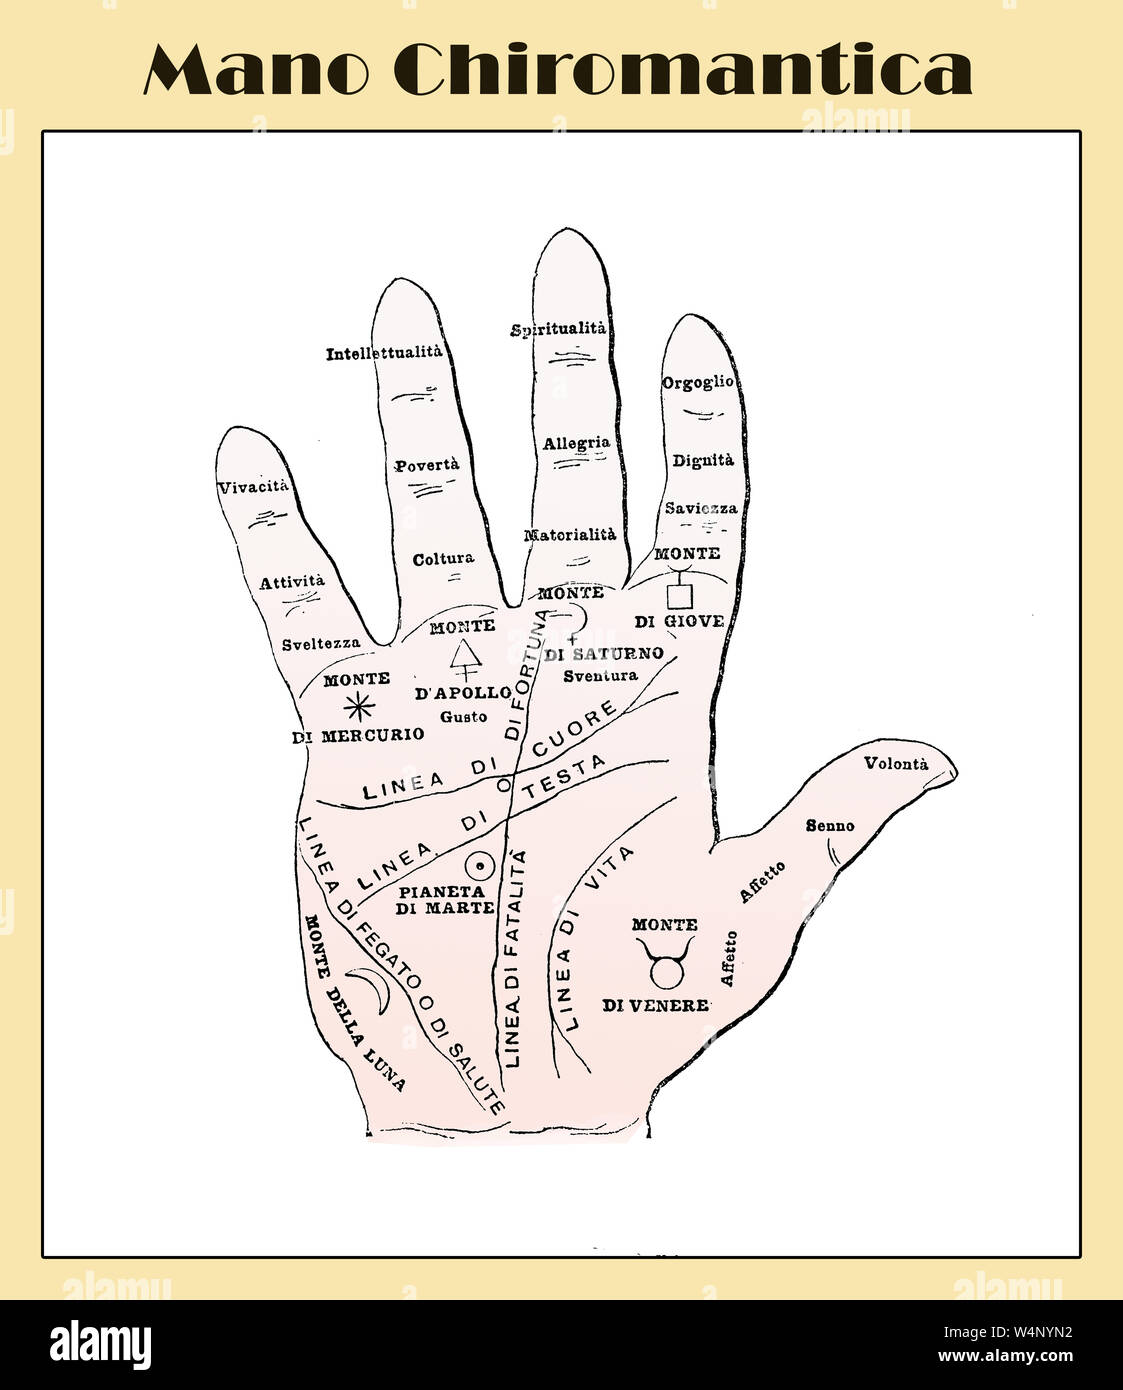 La cultura popular de la lectura de la palma de la mano: chiromantic mano con descripciones de un léxico italiano a principios de los '900 Foto de stock